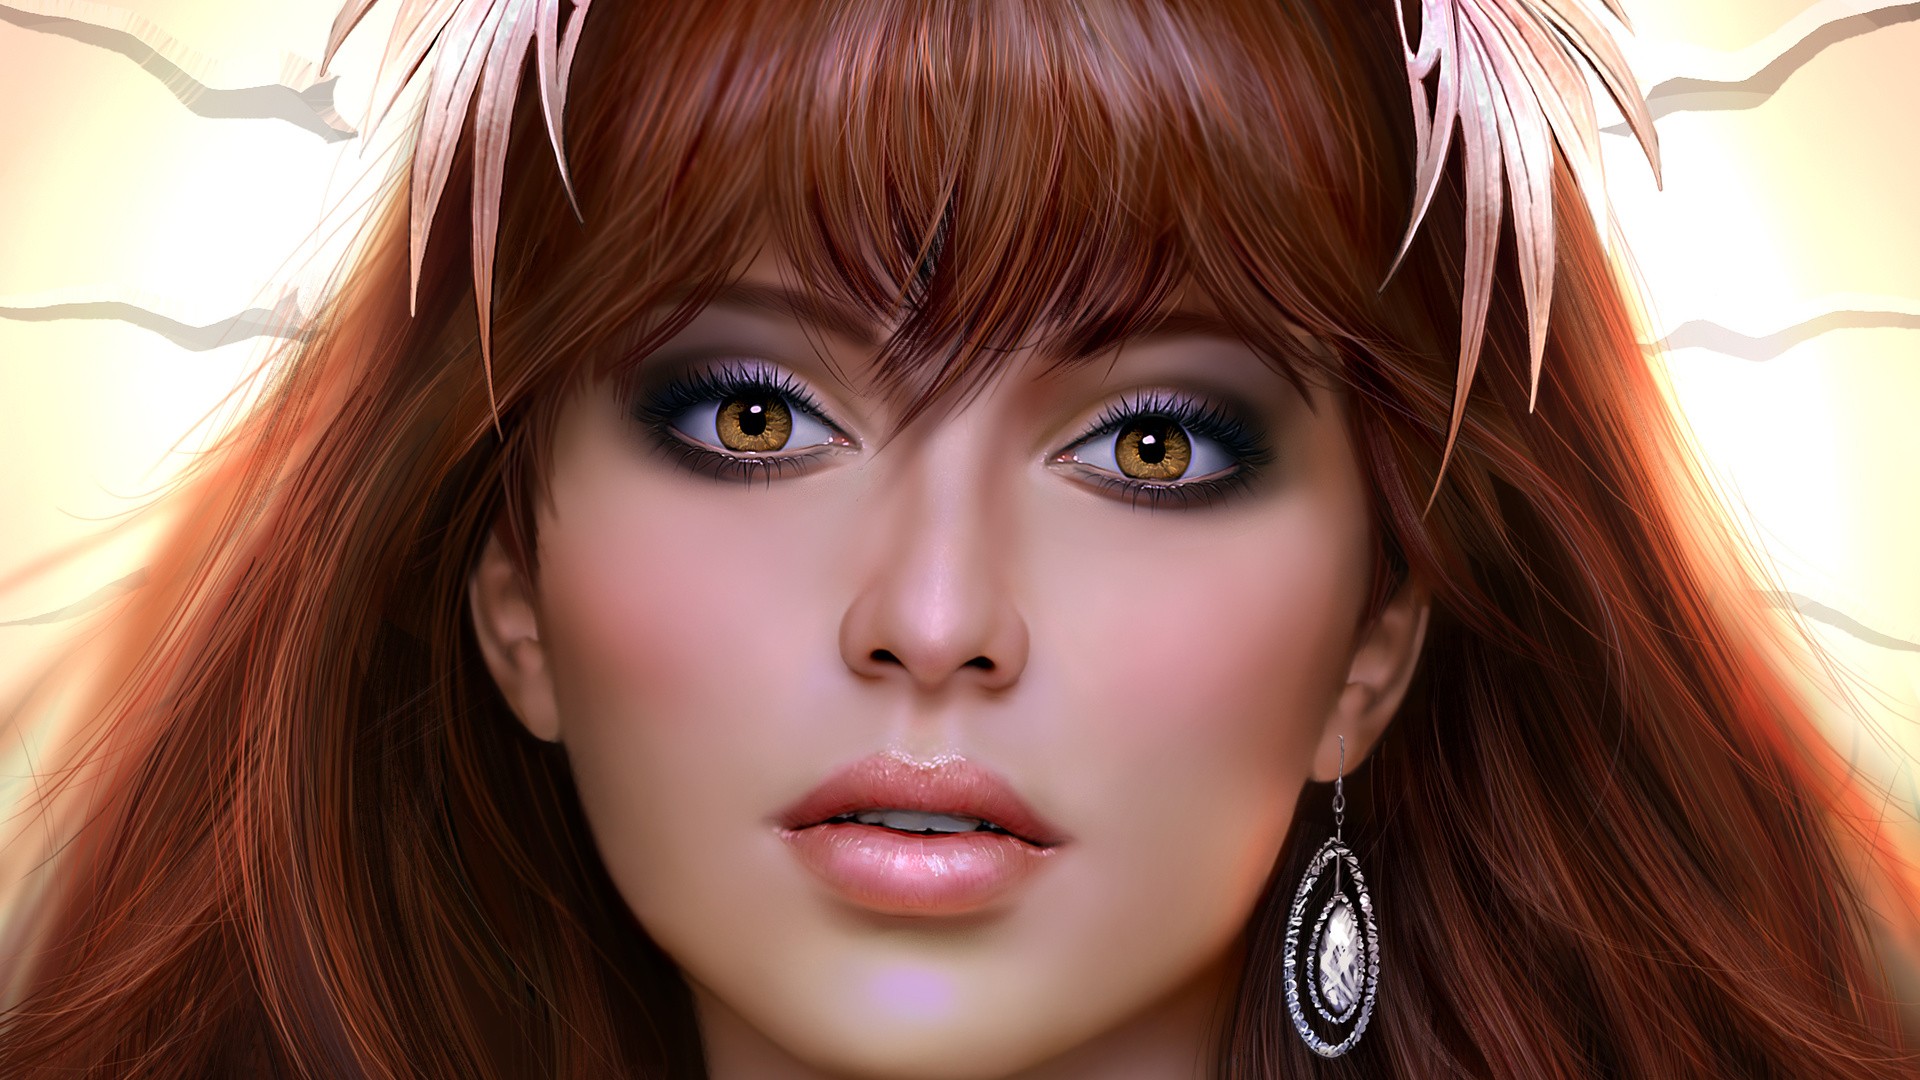 General 1920x1080 digital art face bangs redhead portrait open mouth looking at viewer women hoop earrings brown eyes fantasy girl leaves